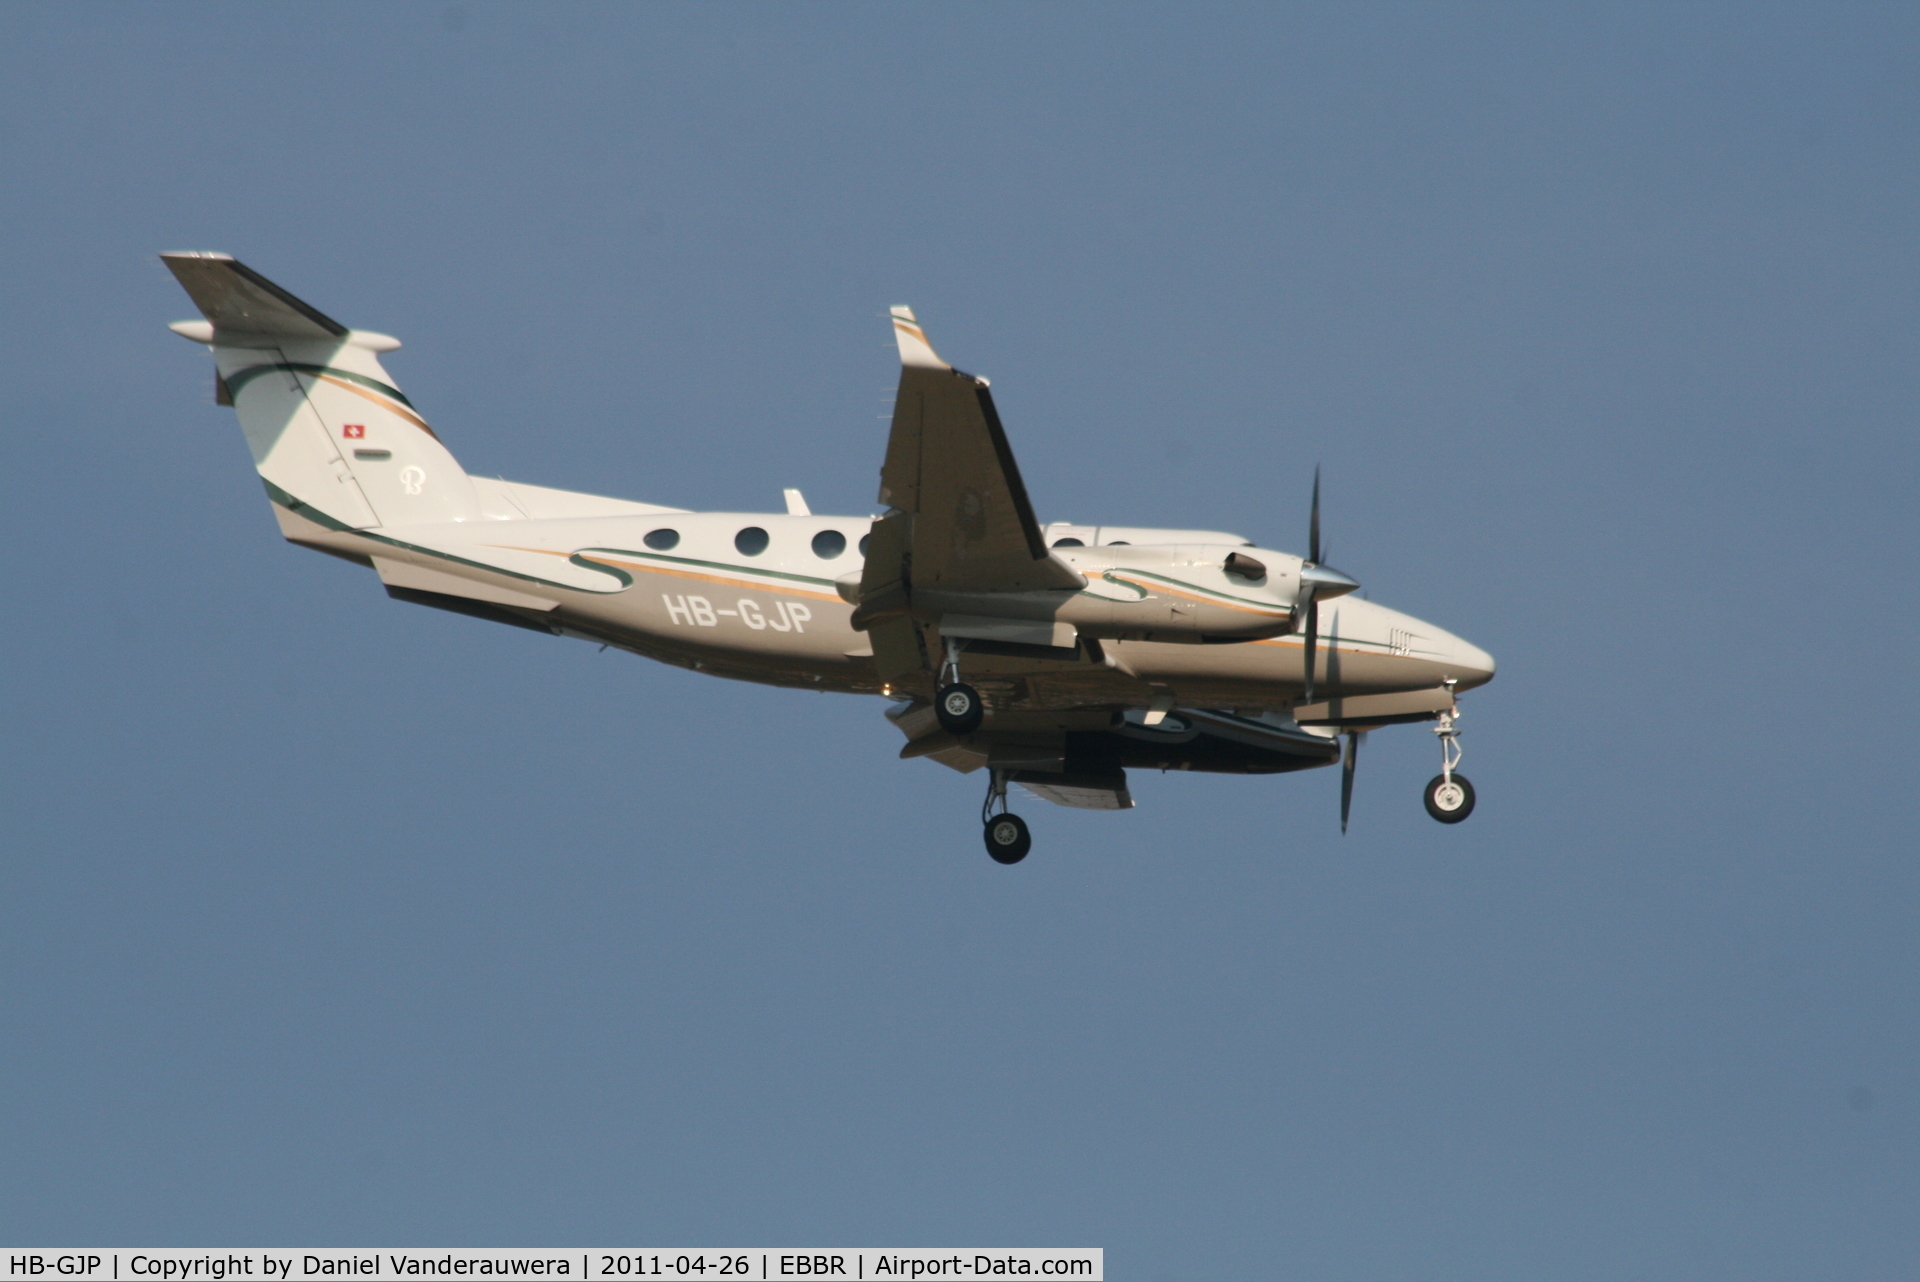 HB-GJP, 2006 Raytheon King Air 350 (B300) C/N FL-477, Descending to RWY 02